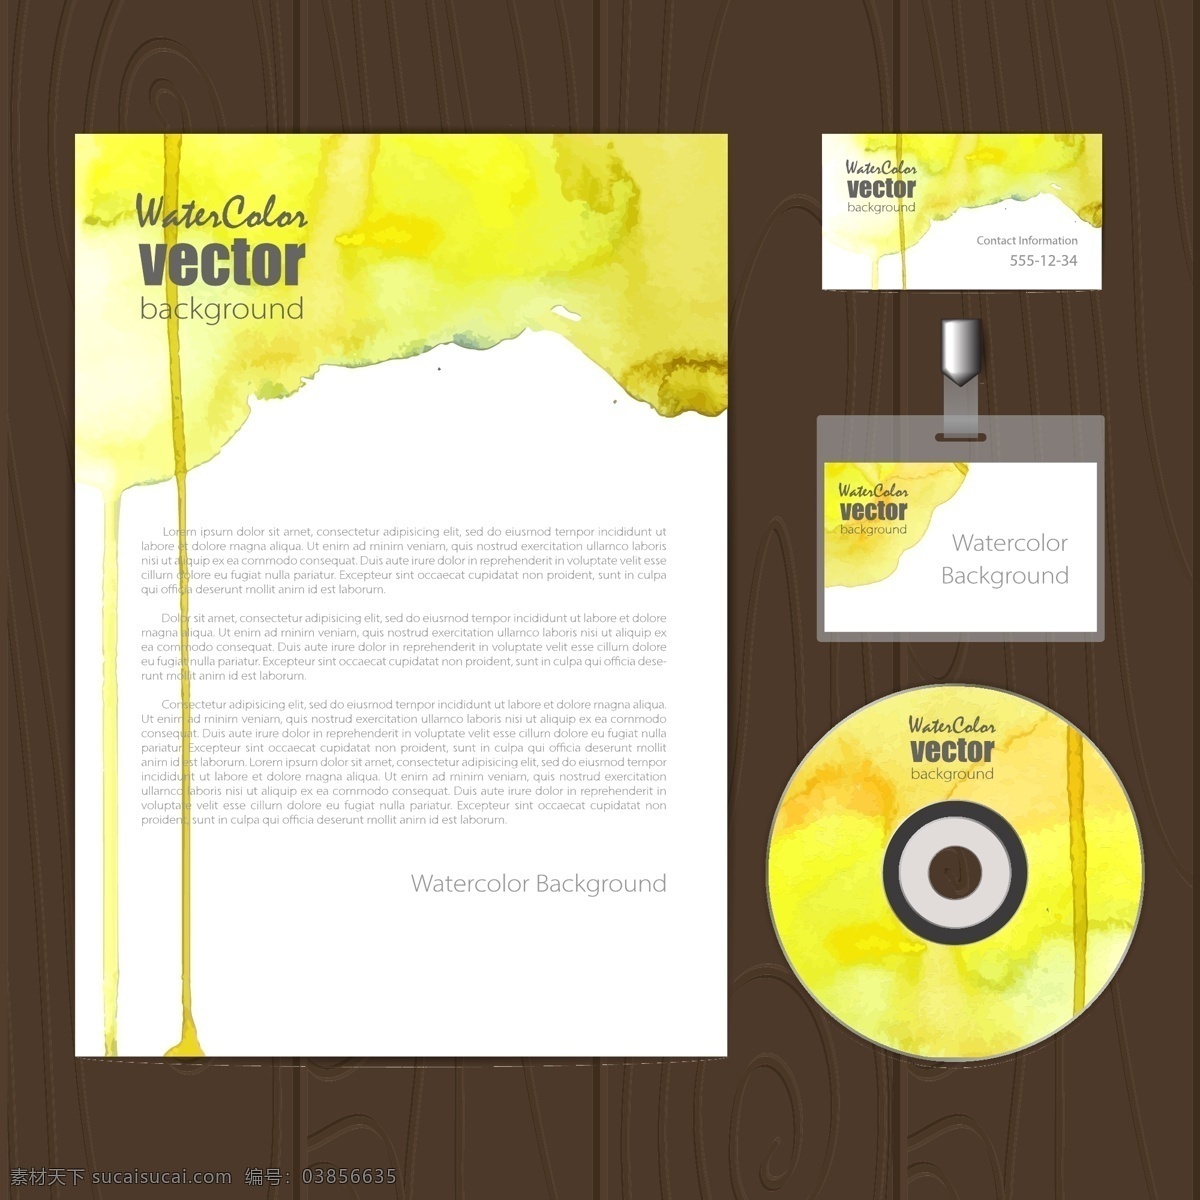 黄色 时尚 企业 文化 光盘 品牌设计 合集 矢量 矢量素材 设计素材 背景素材